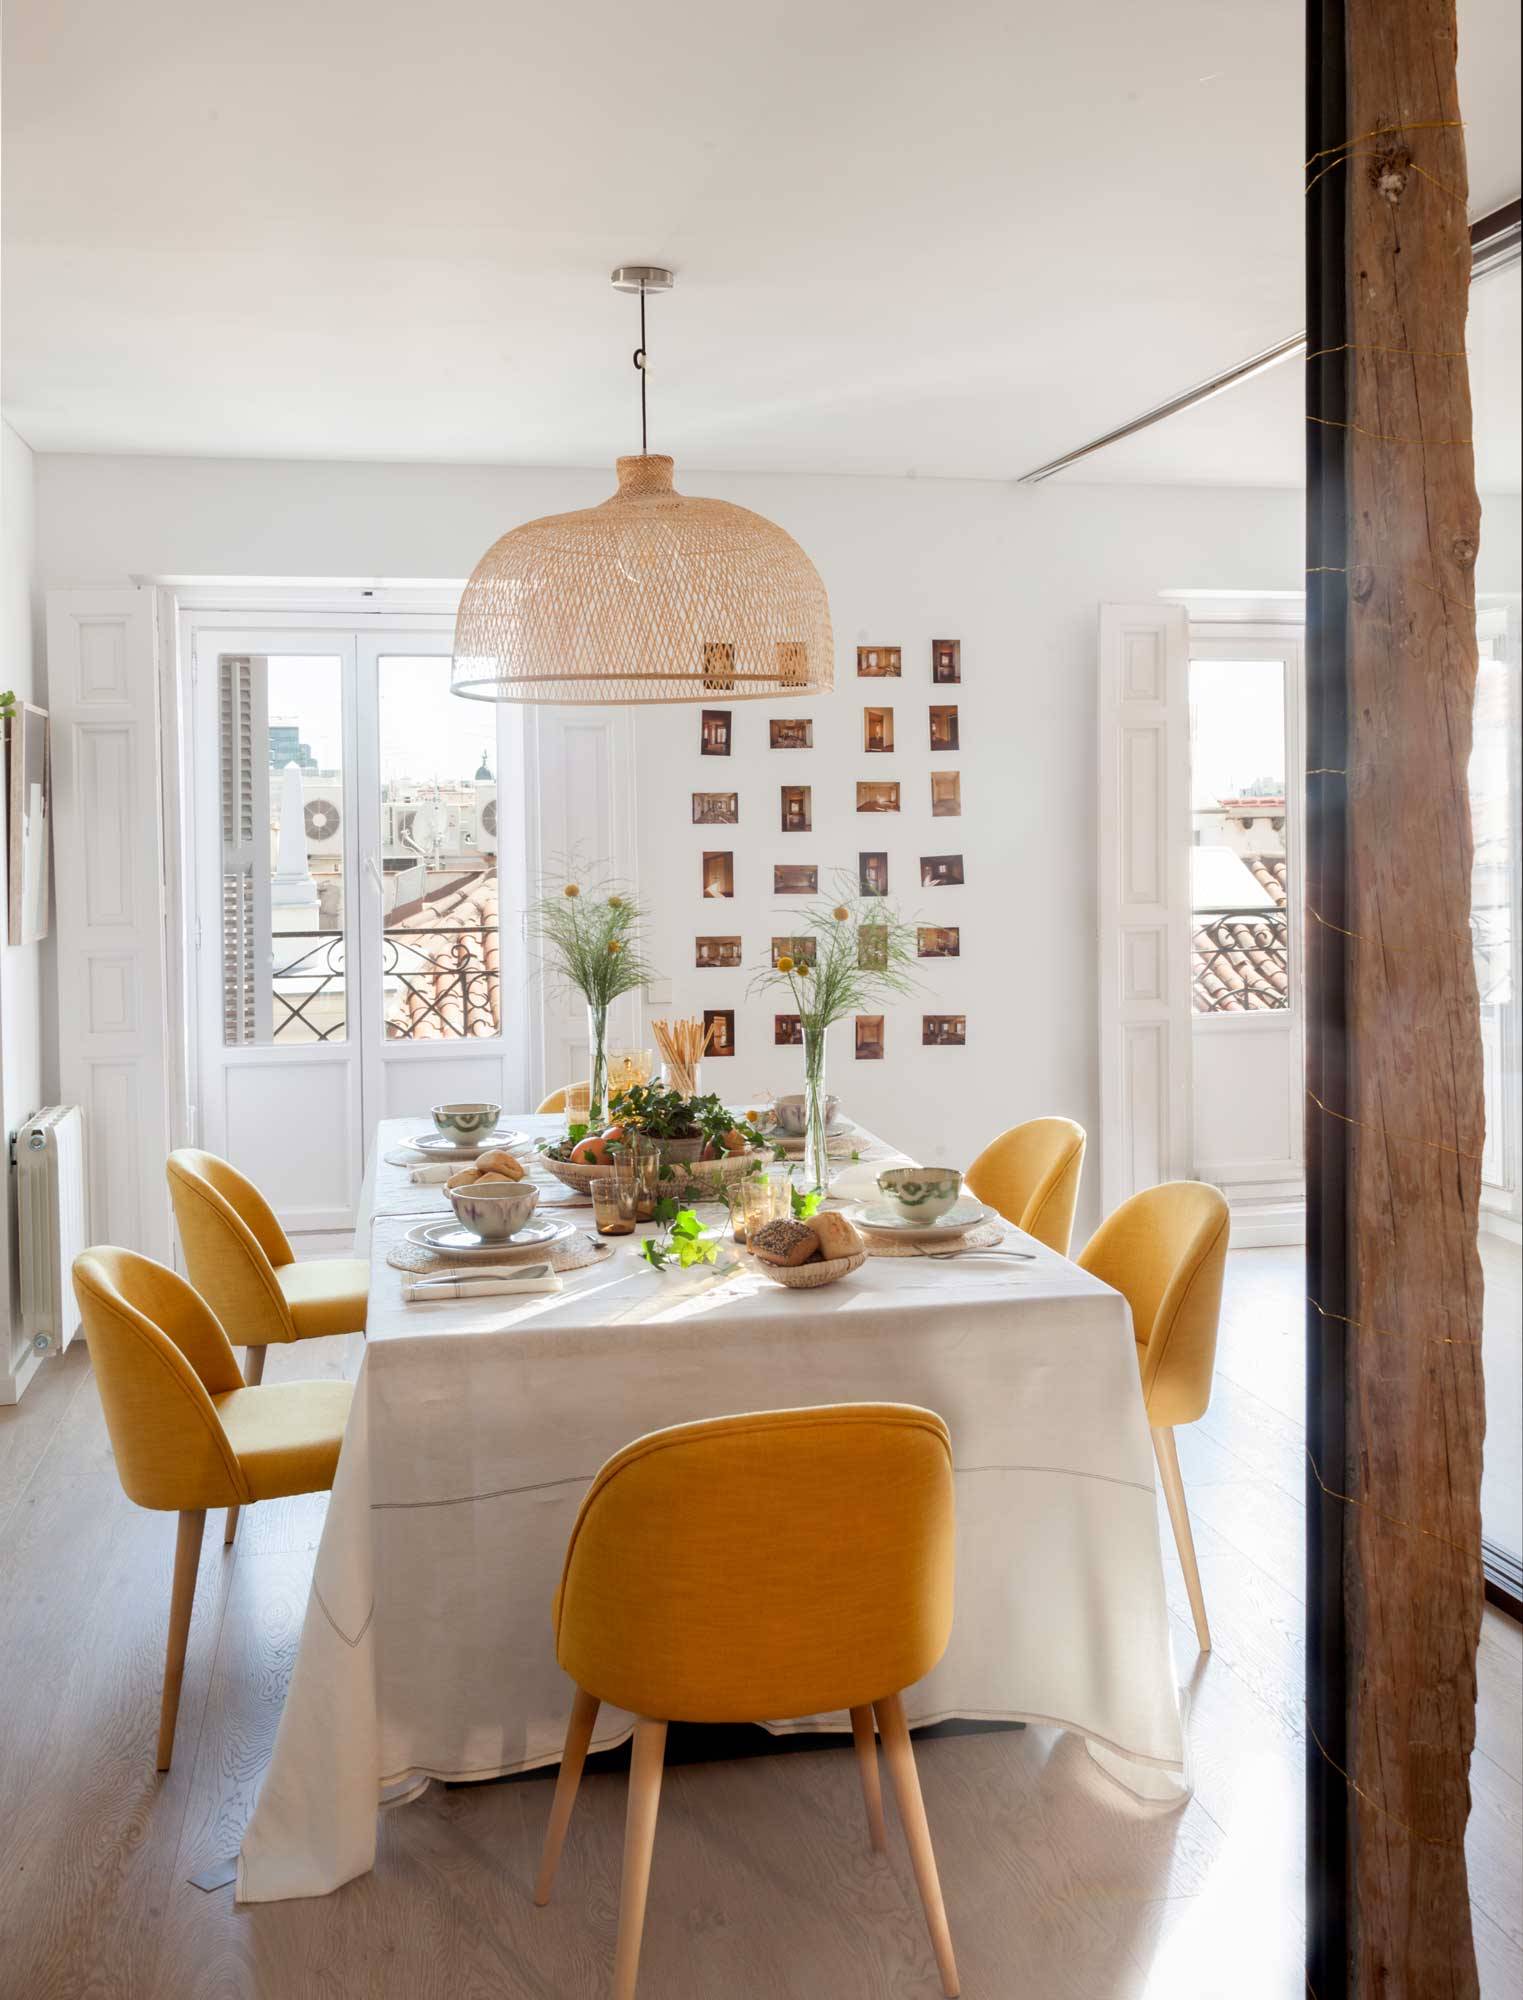 Comedor con mesa, sillas tapizadas en amarillo y pared blanca decorada con fotos tipo Polaroid.